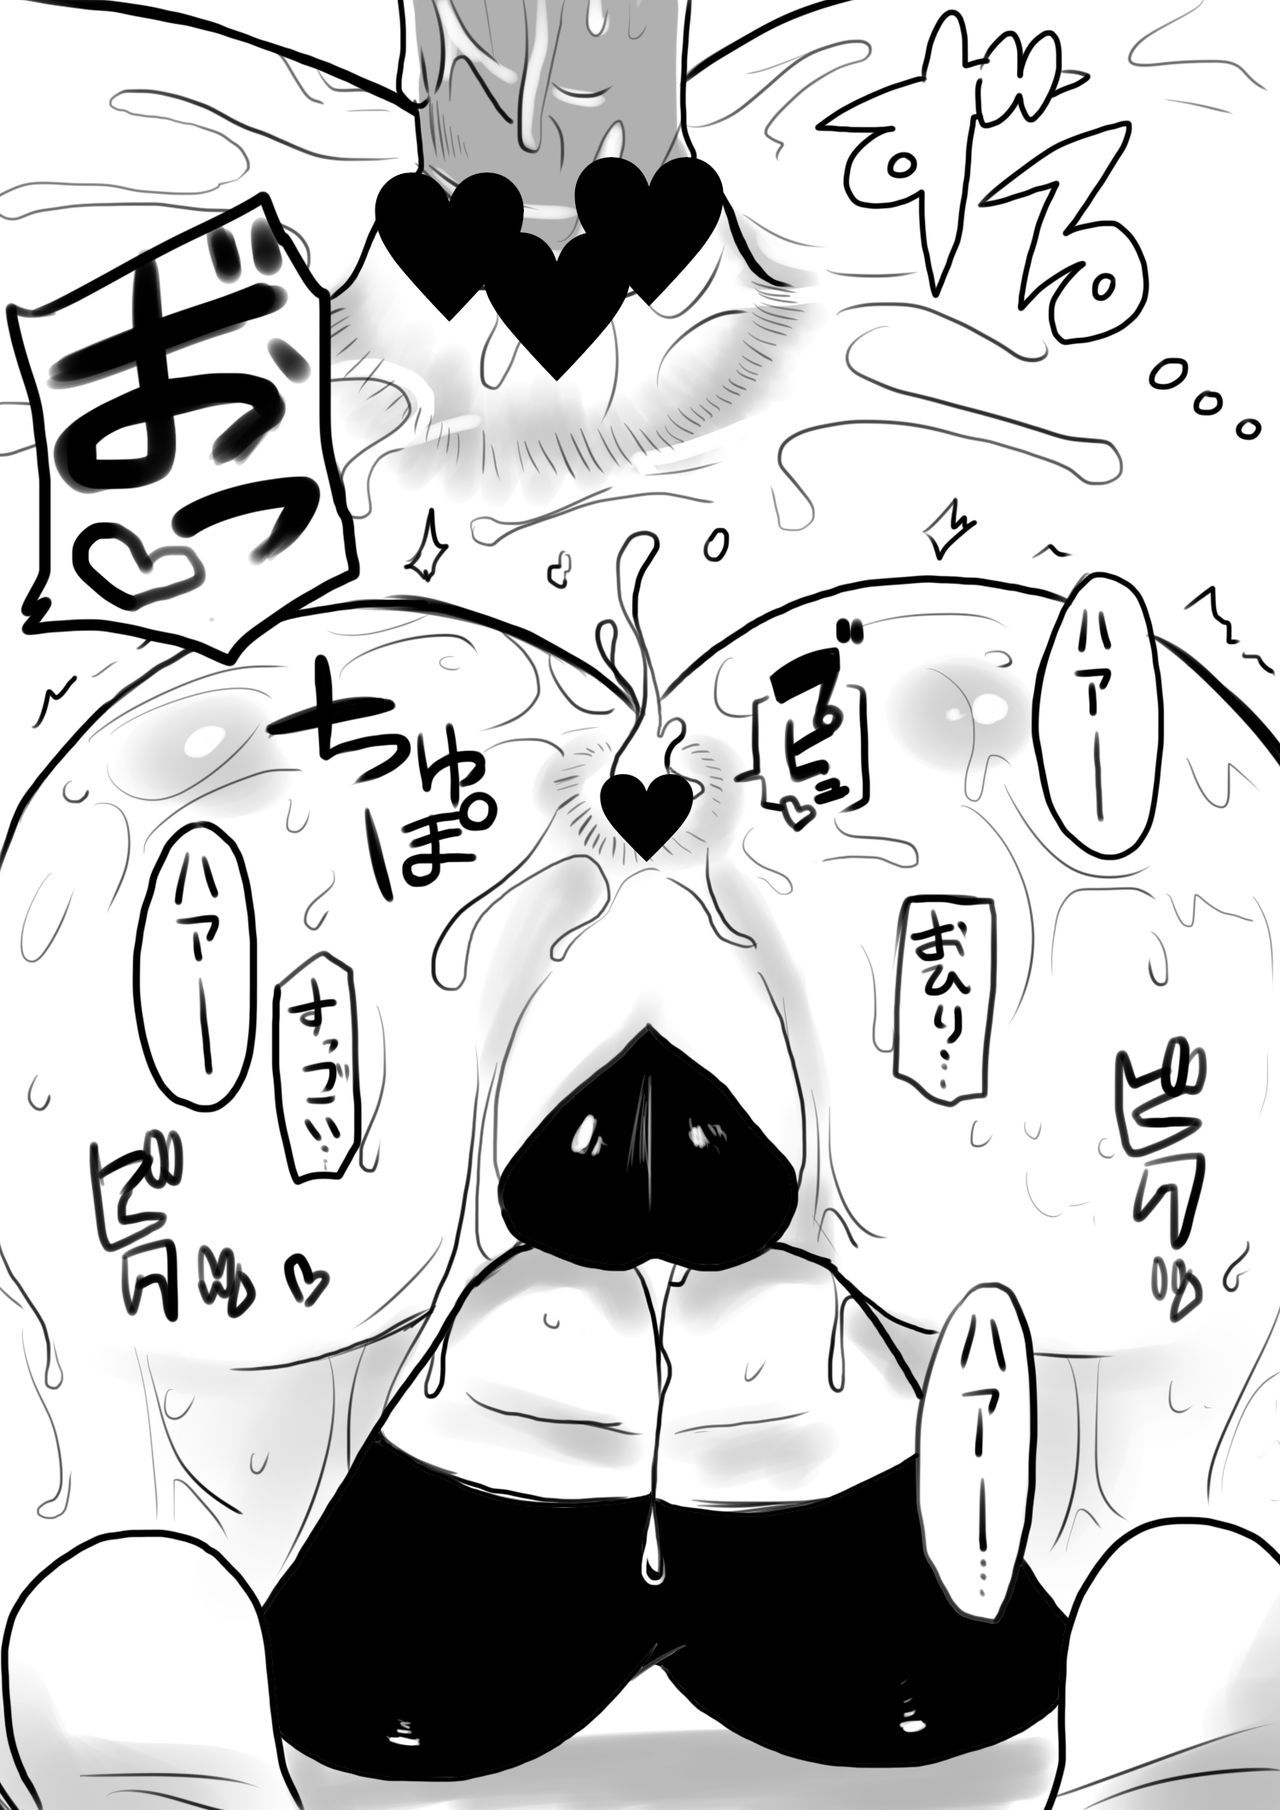 [581] 立花響尻穴調教 (Senki Zesshou Symphogear) [581]  立花響尻穴調教 (戦姫絶唱シンフォギア)